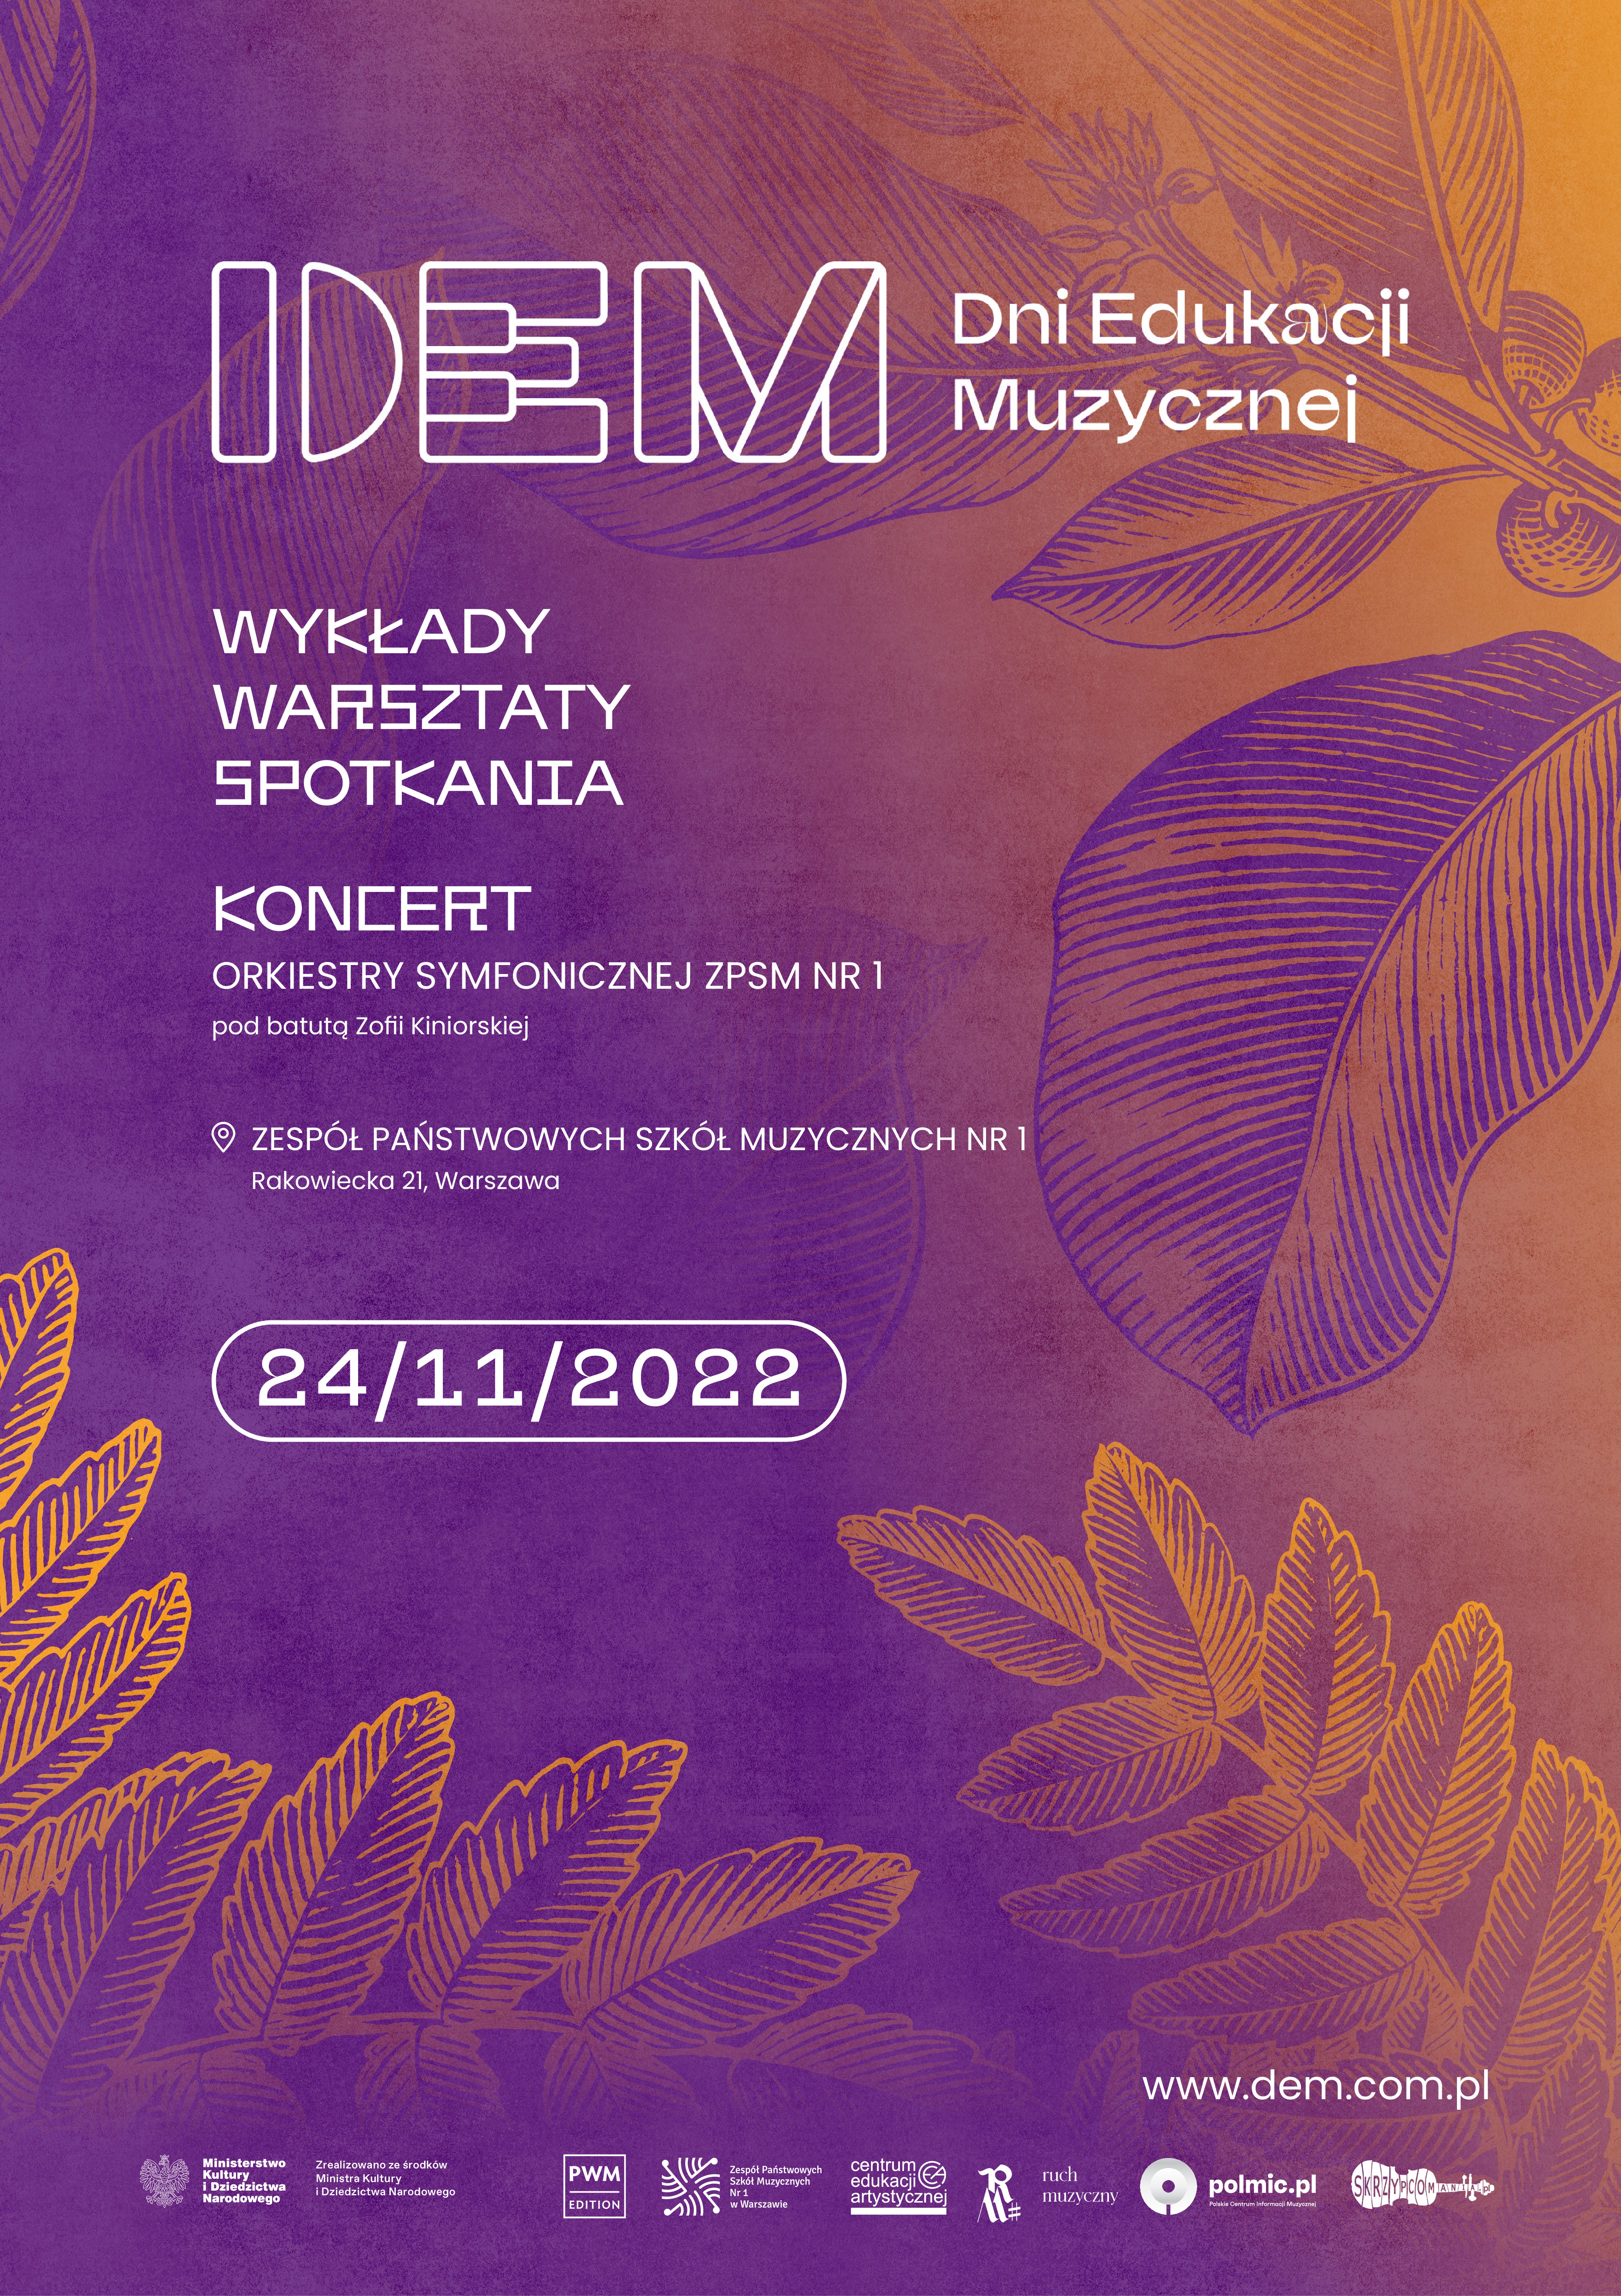 Plakat Dni Edukacji Muzycznej PWM 2022